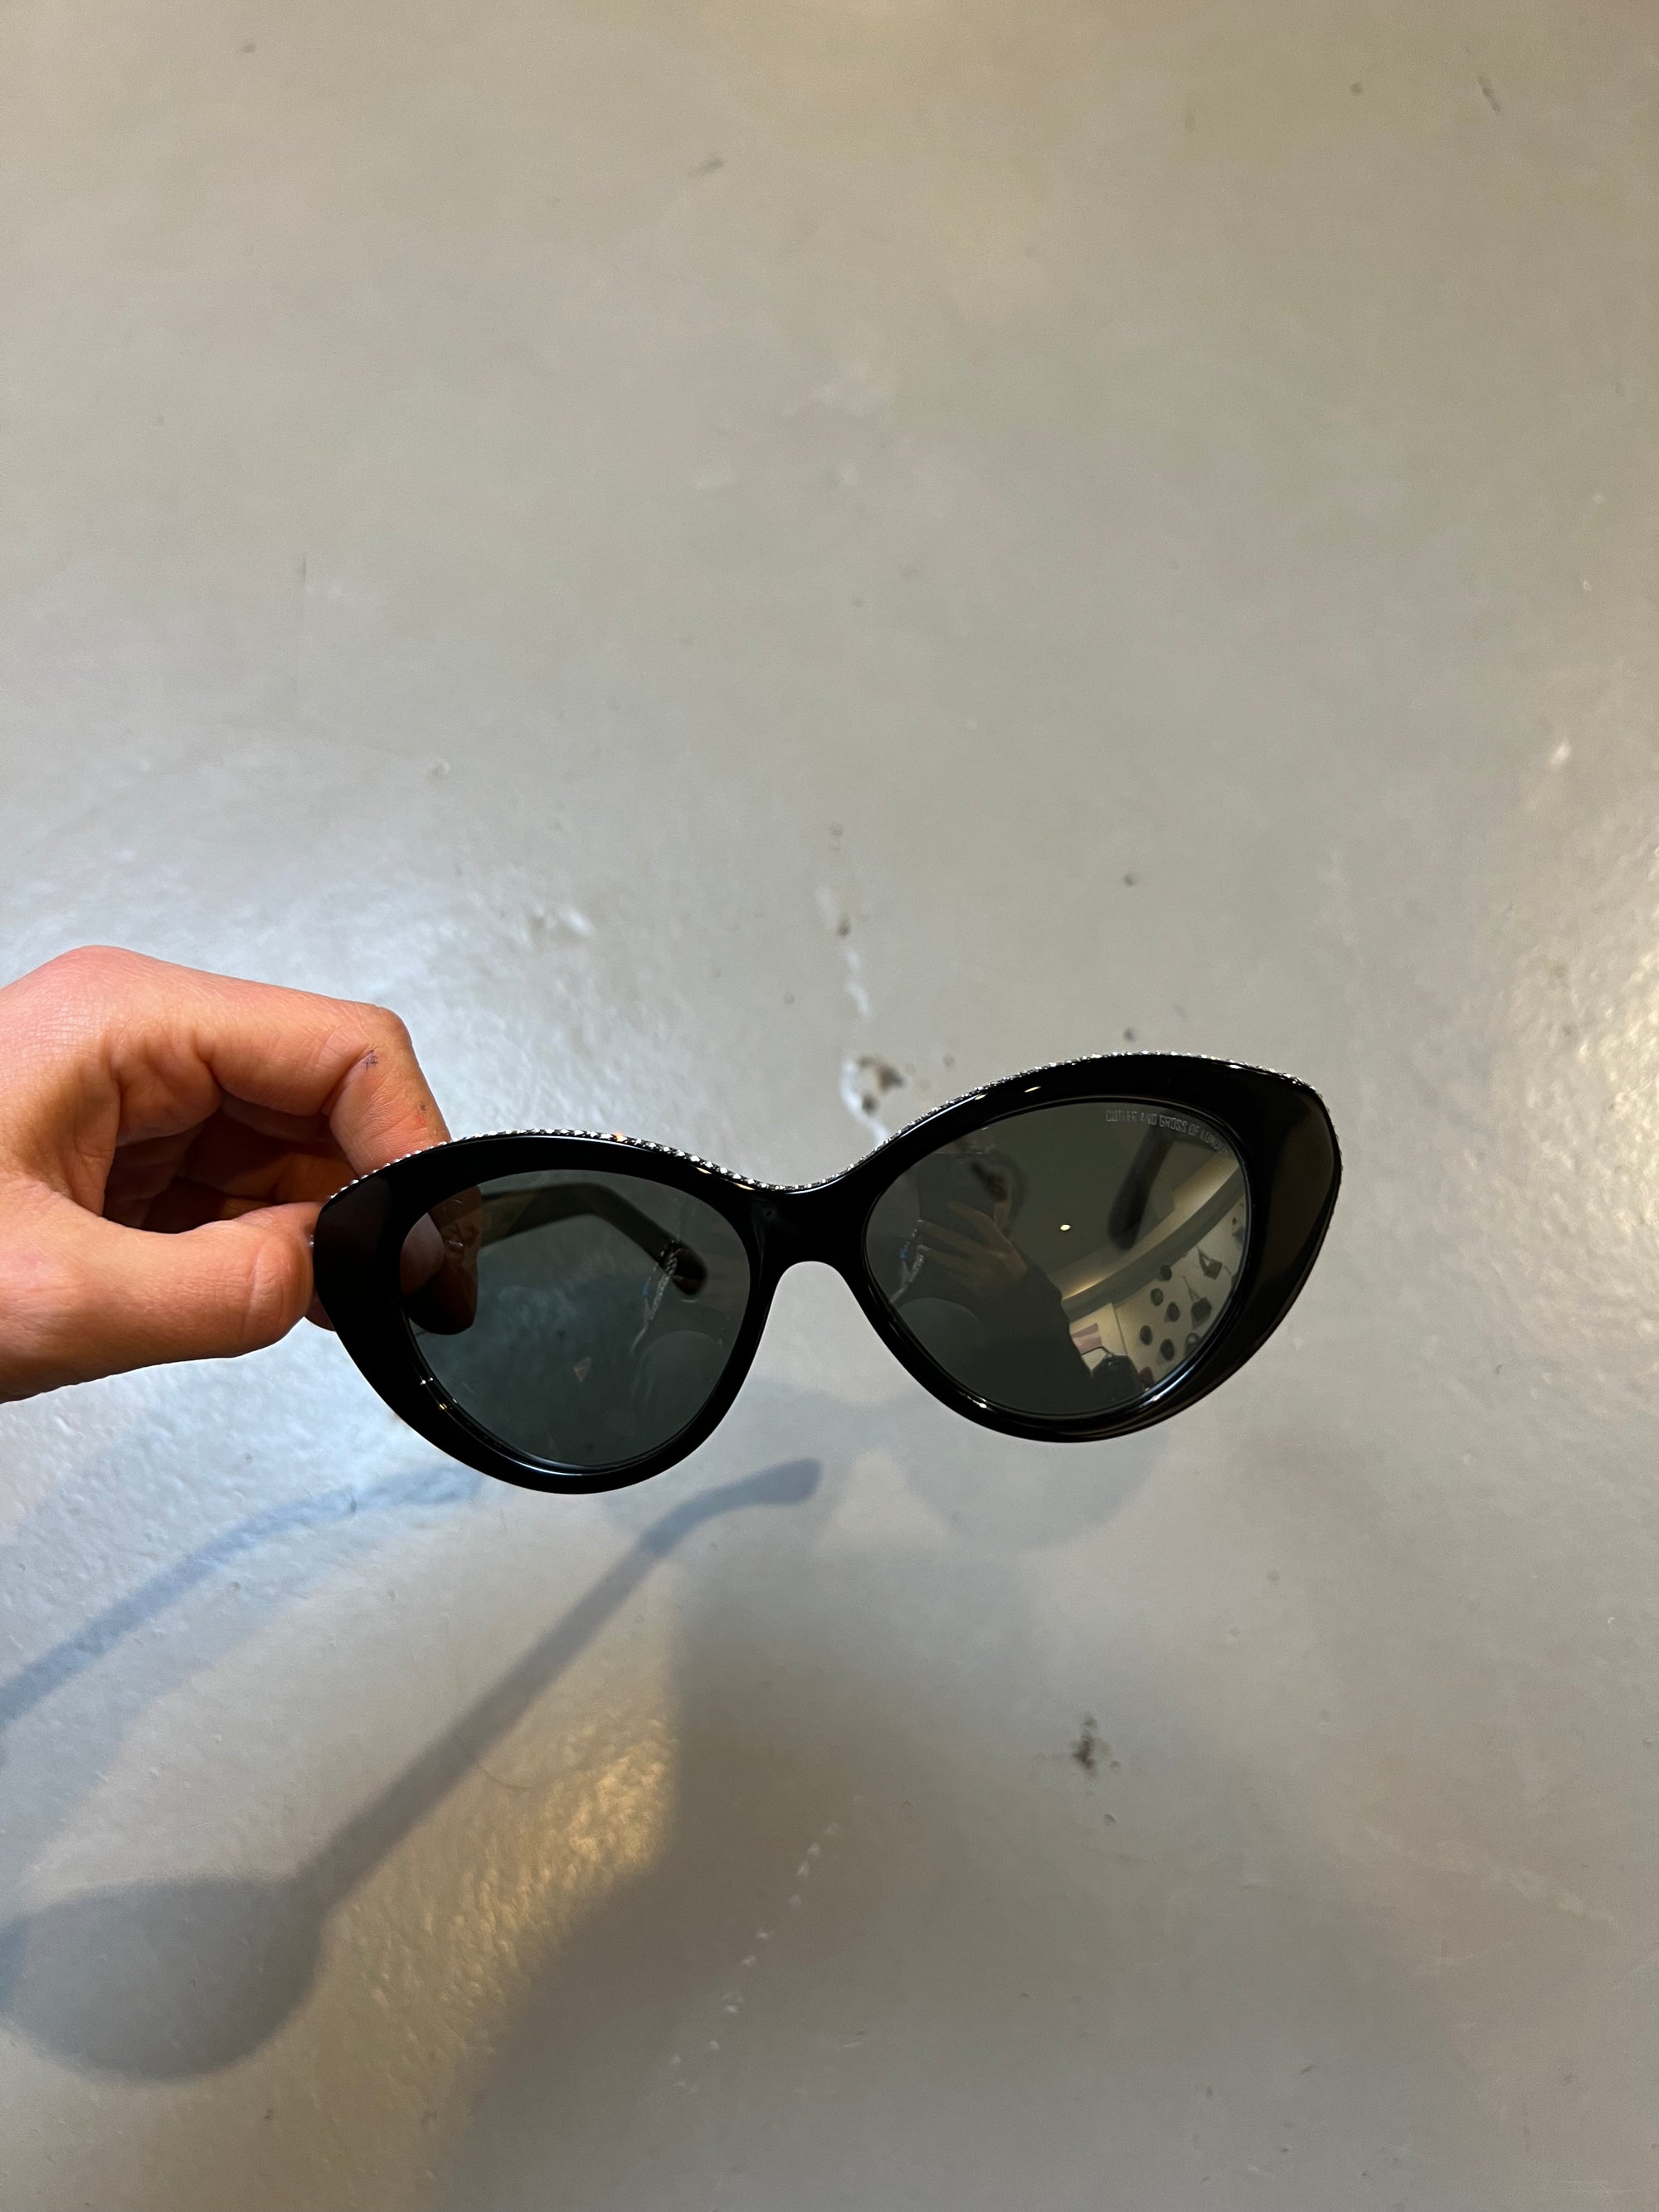 Produktbild der Cutler and Gross Sunglasses Black Glitter von vorne vor grauem Hintergrund.